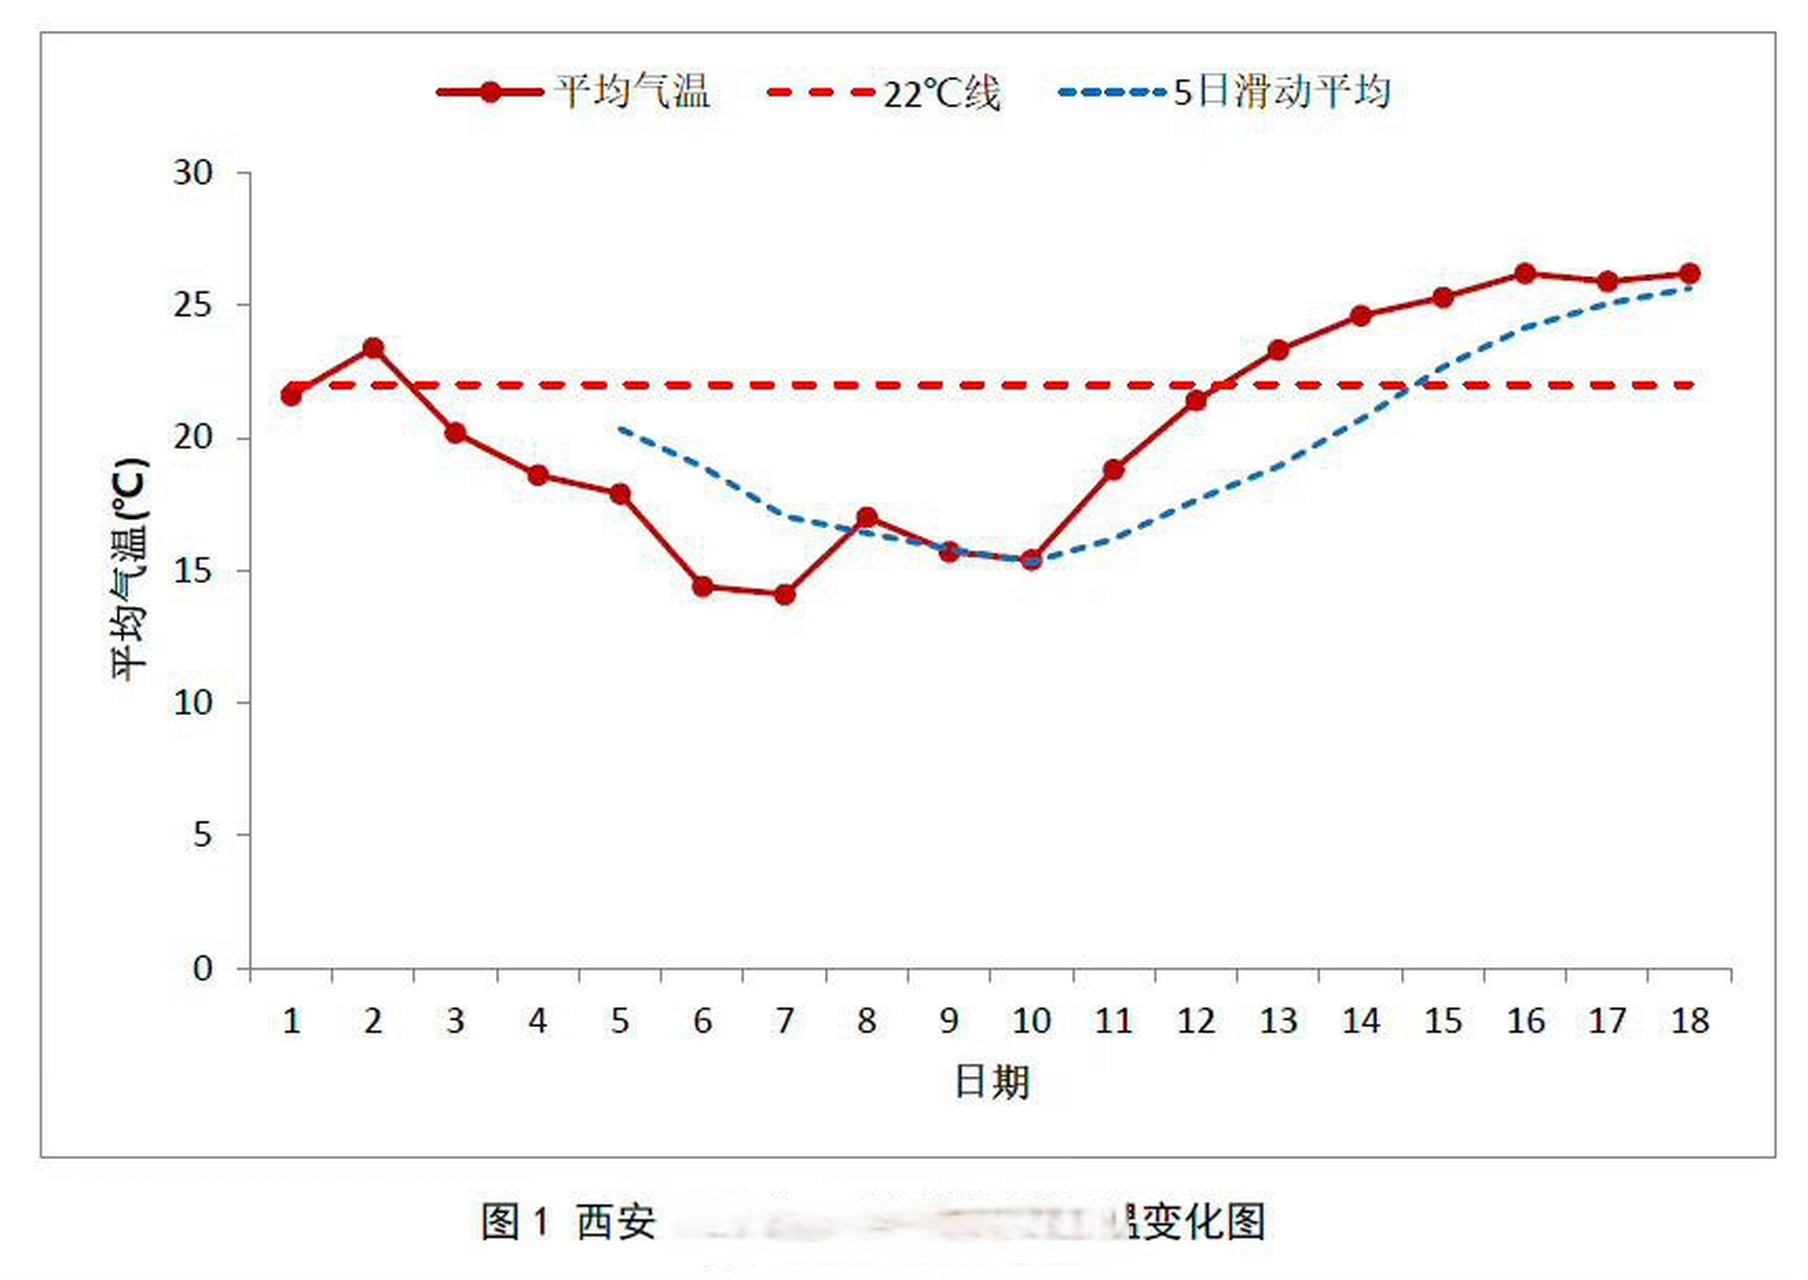 陕西省气候中心统计,5月以来(5月1